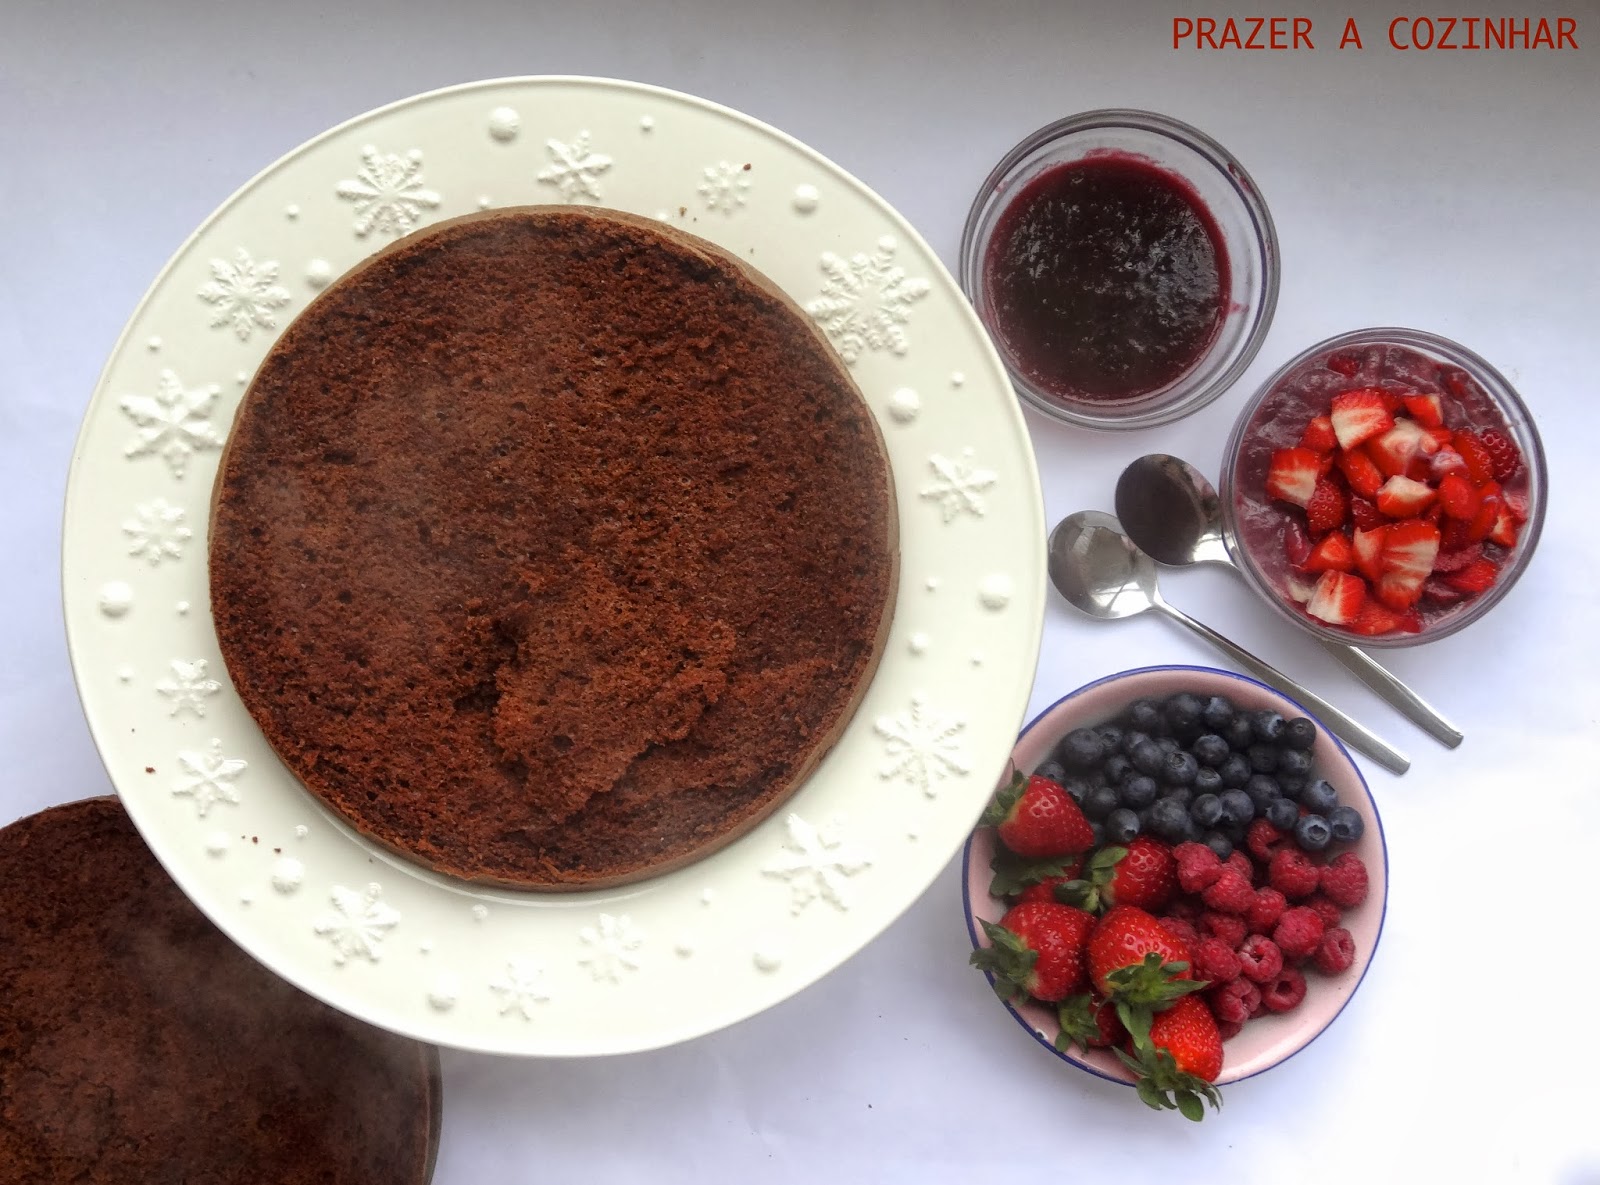 prazer a cozinhar - Bolo de chocolate com recheio de frutos vermelhos